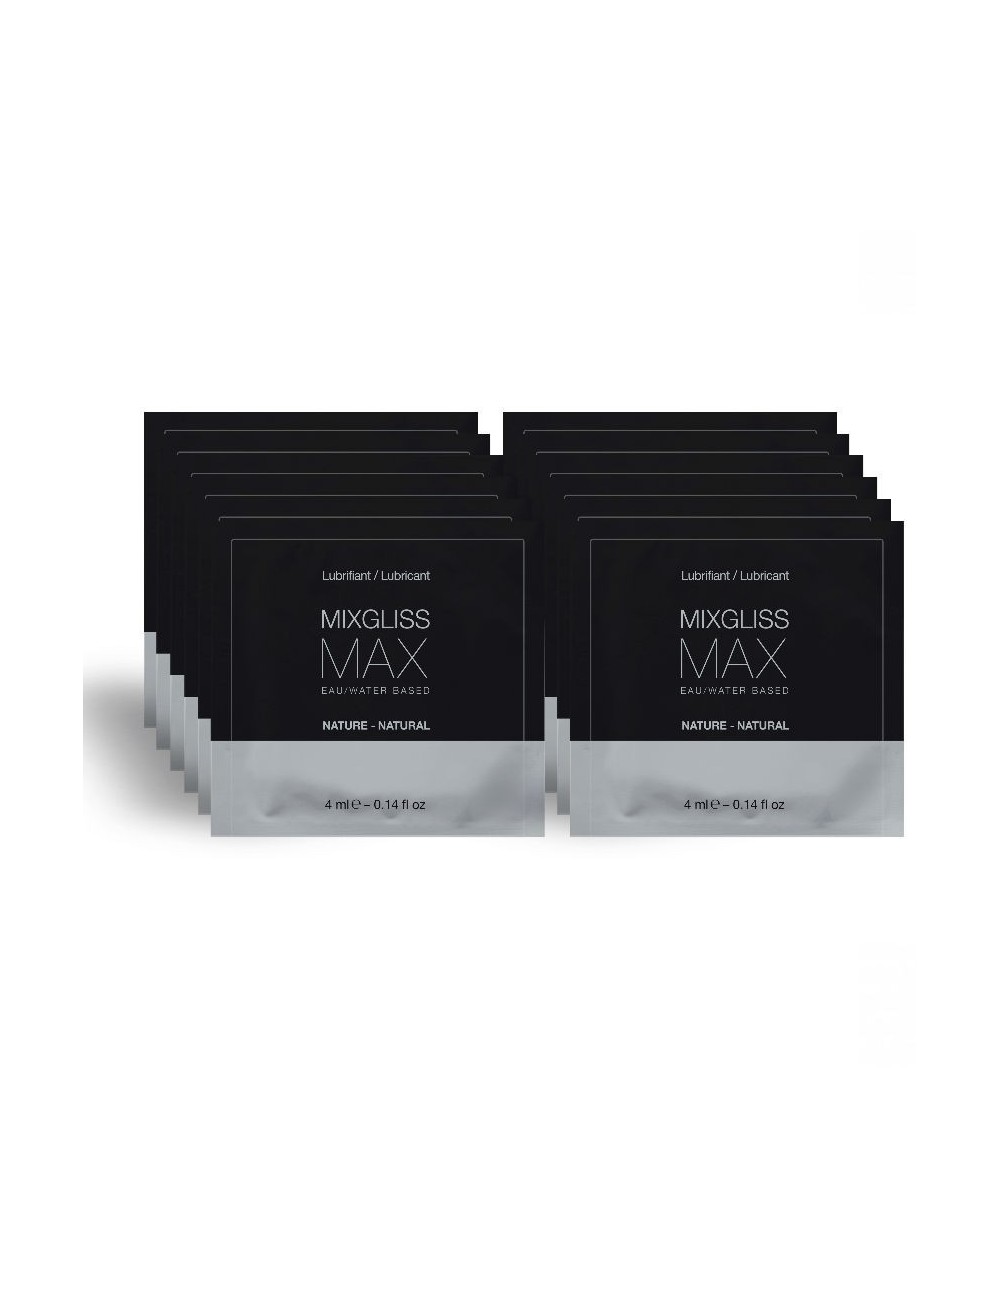 MIXGLISS MAX LUBRIFIANT PACK DILATEUR ANAL 12 DOSE UNIQUE 4ML - Huiles de massage -